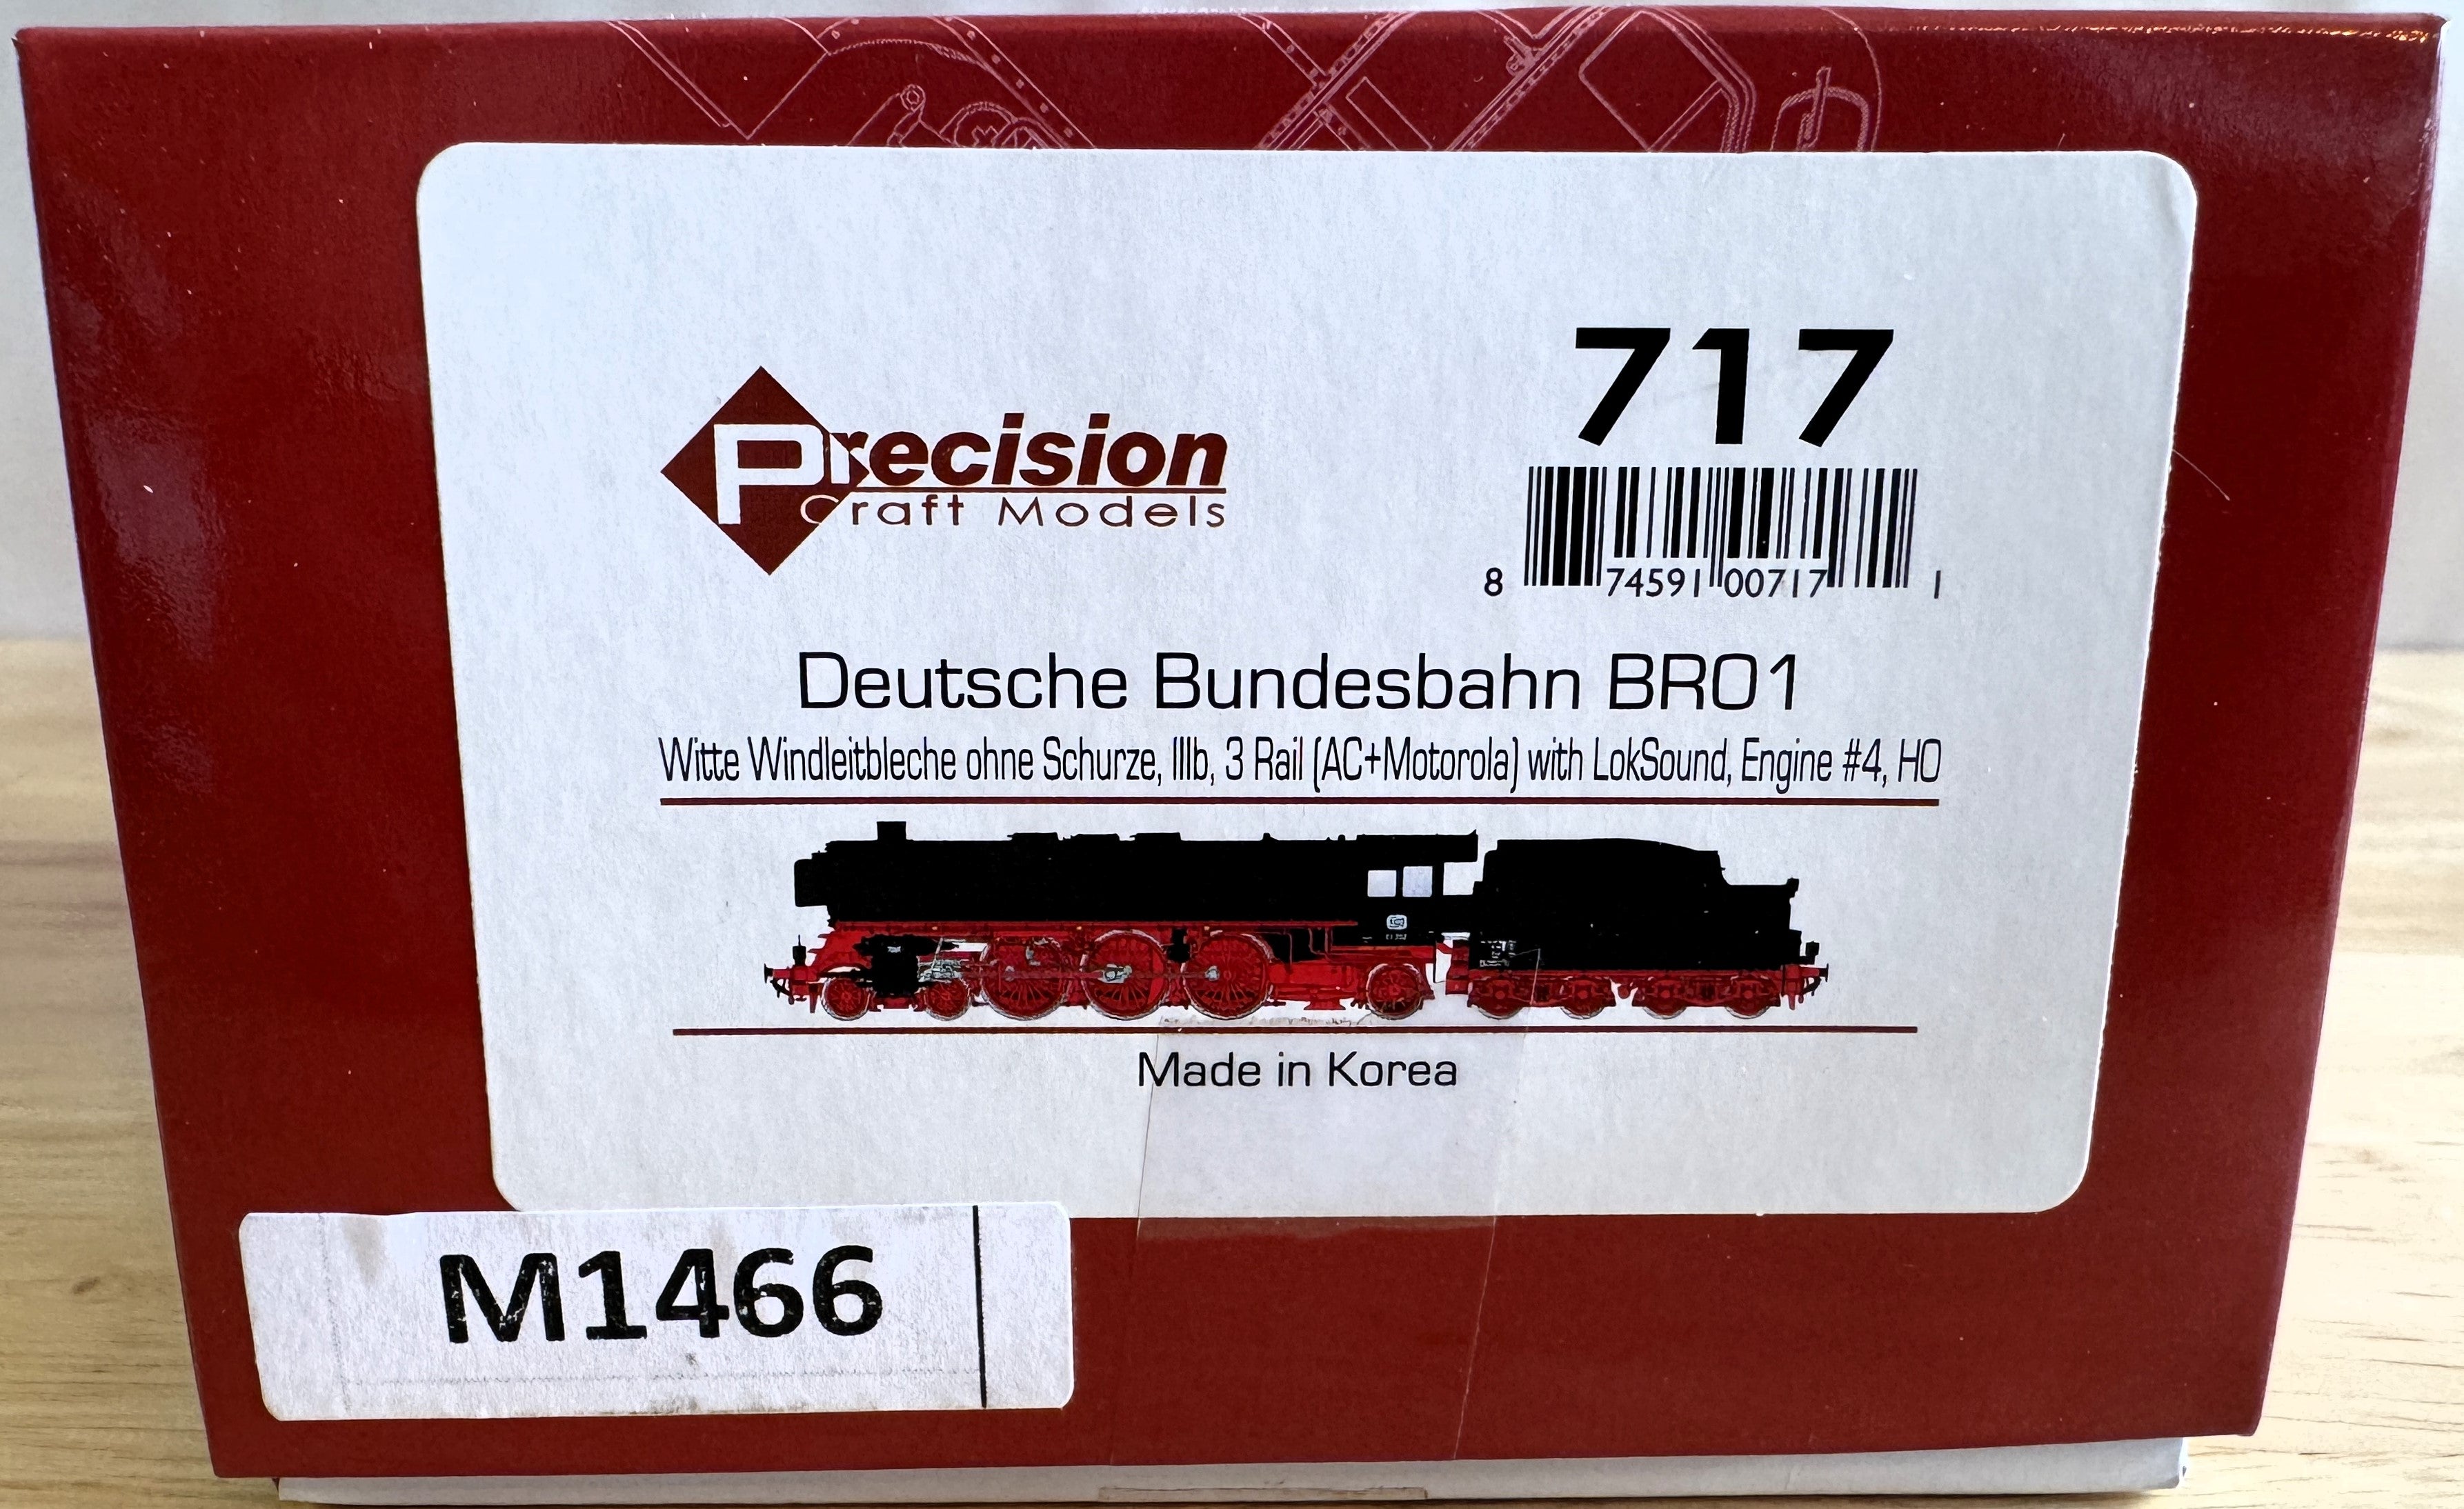 Precision Craft Models 717 HO Scale Deutsche Bundesbahn BRO1, Witte Windleitbleche ohne Schurze #4-Second hand-M1466